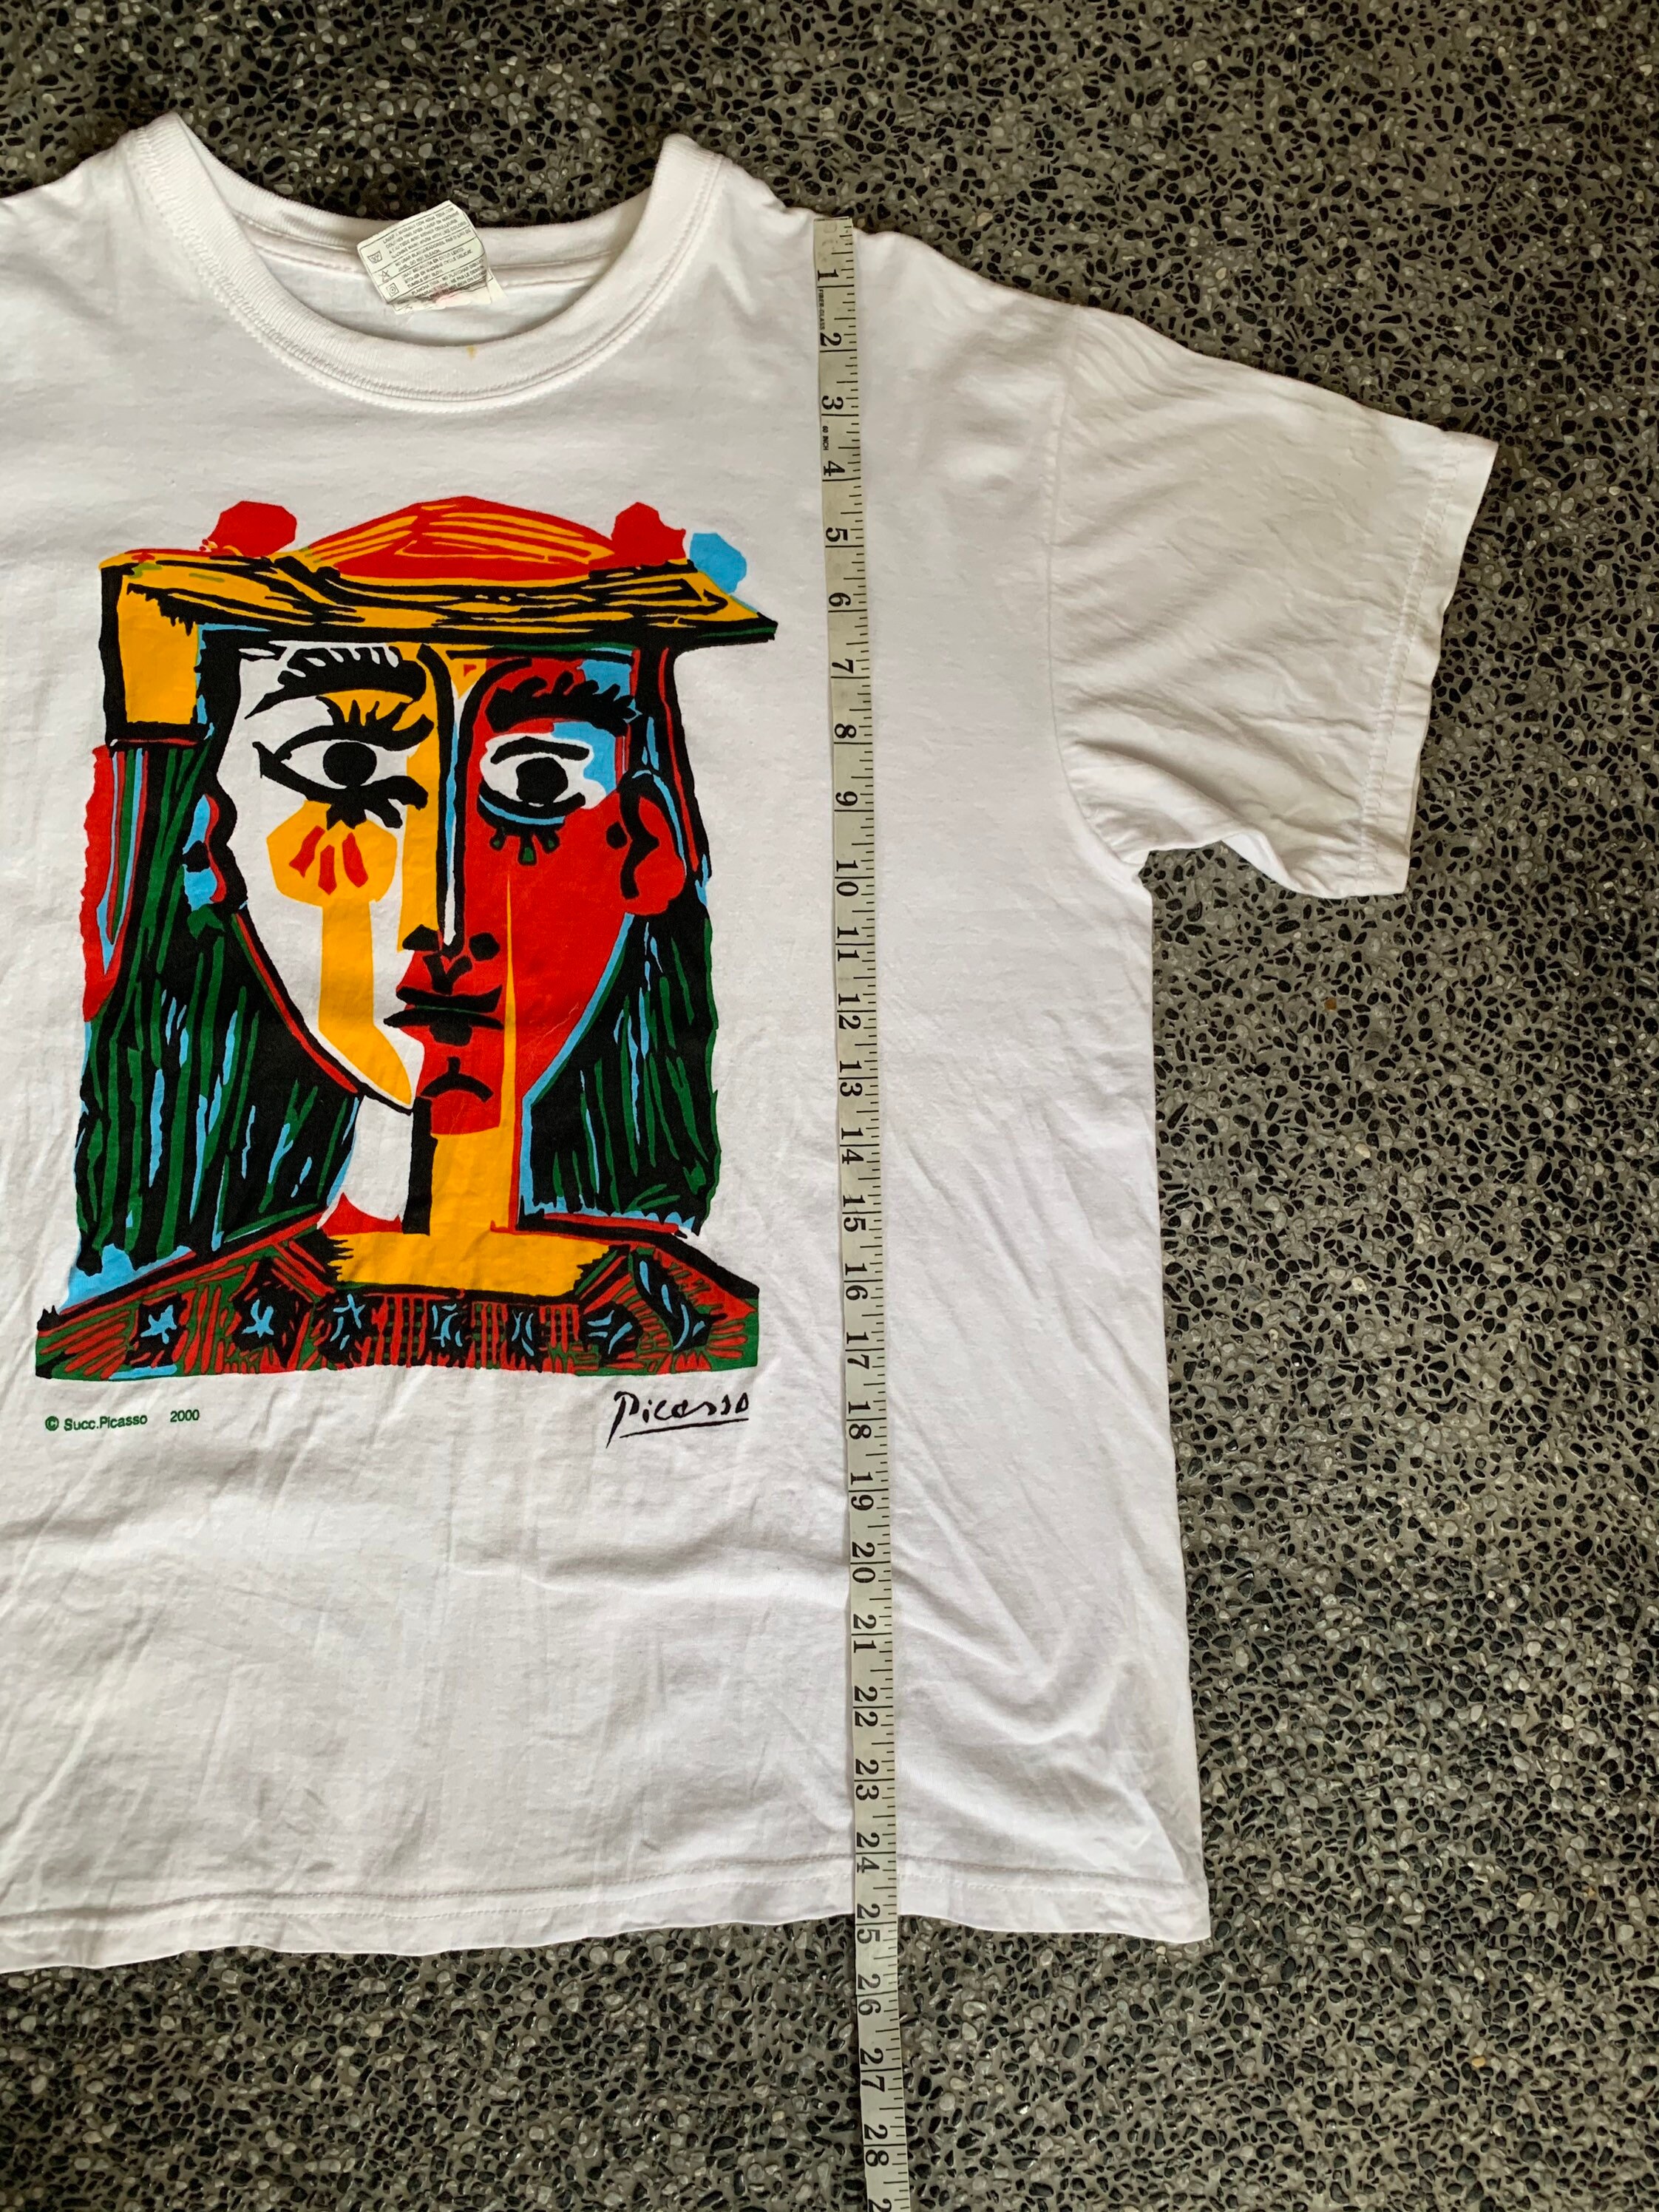 Vintage Pablo Picasso Artwork Tshirt   Etsy